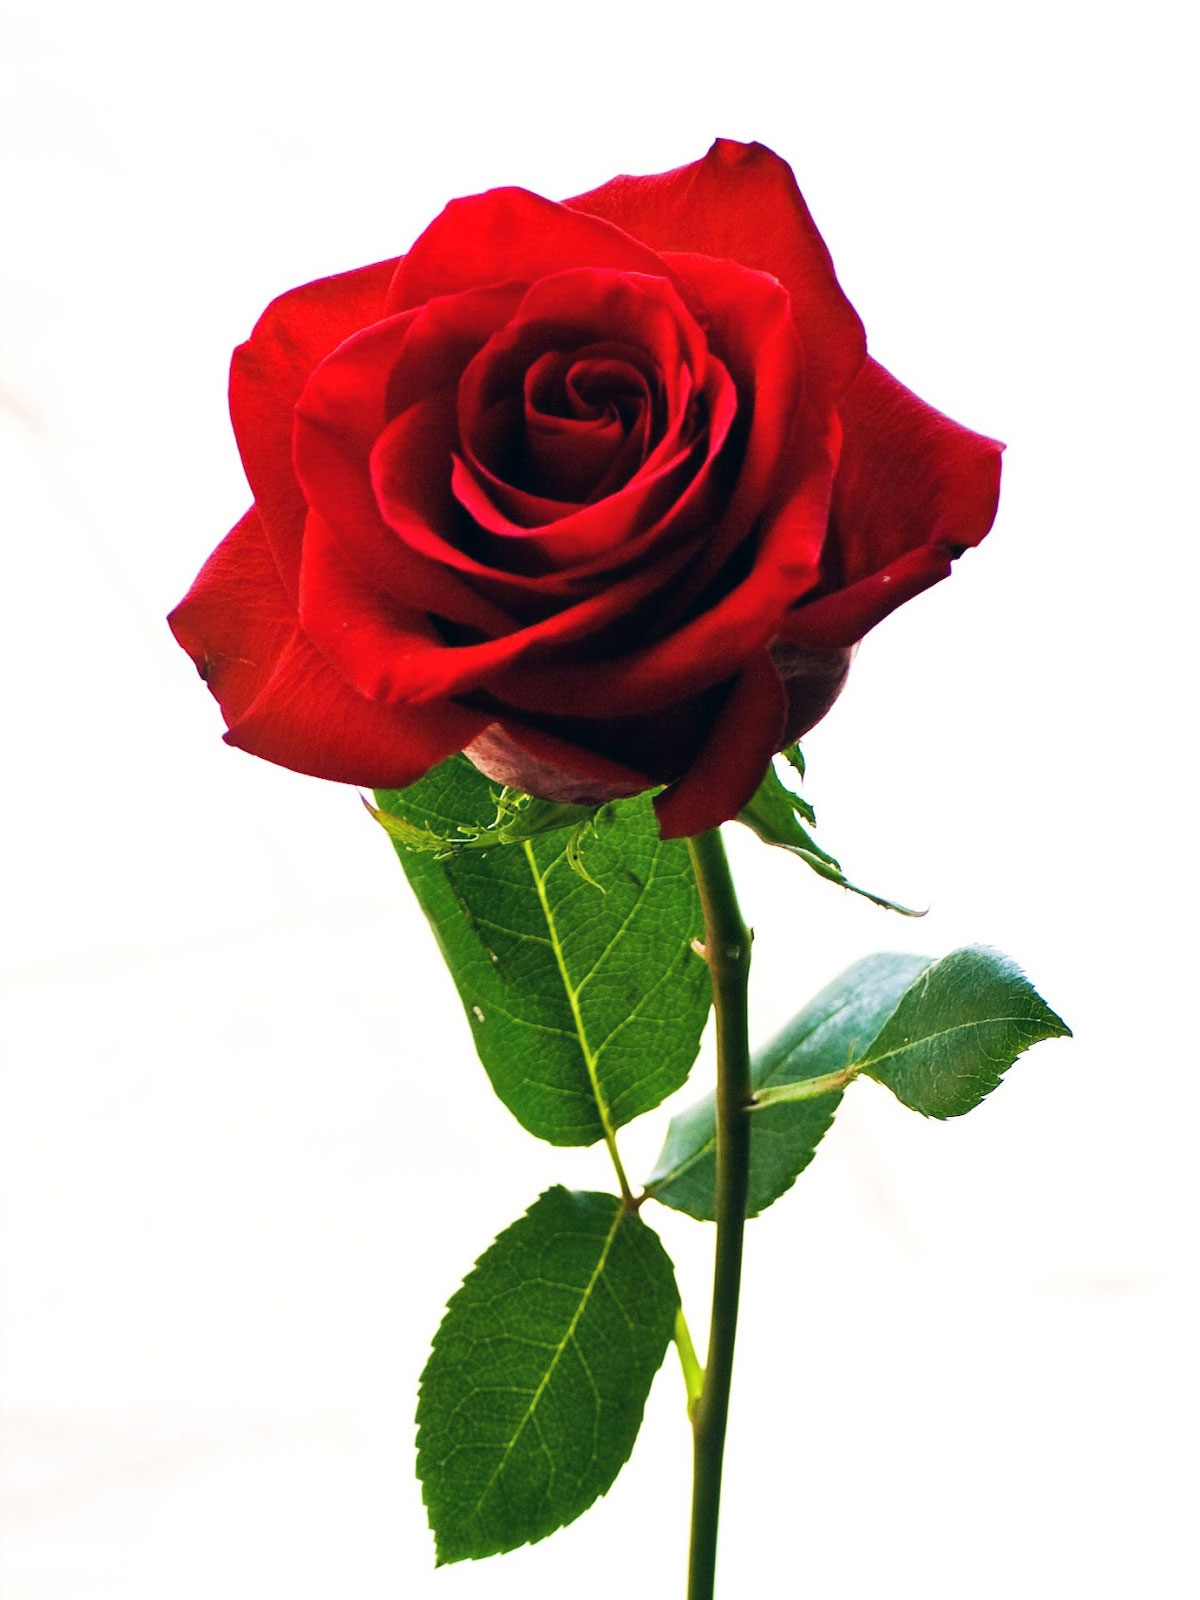 1001 Aneka Foto Gambar Bunga Mawar yang Spesial - Lihat.co.id